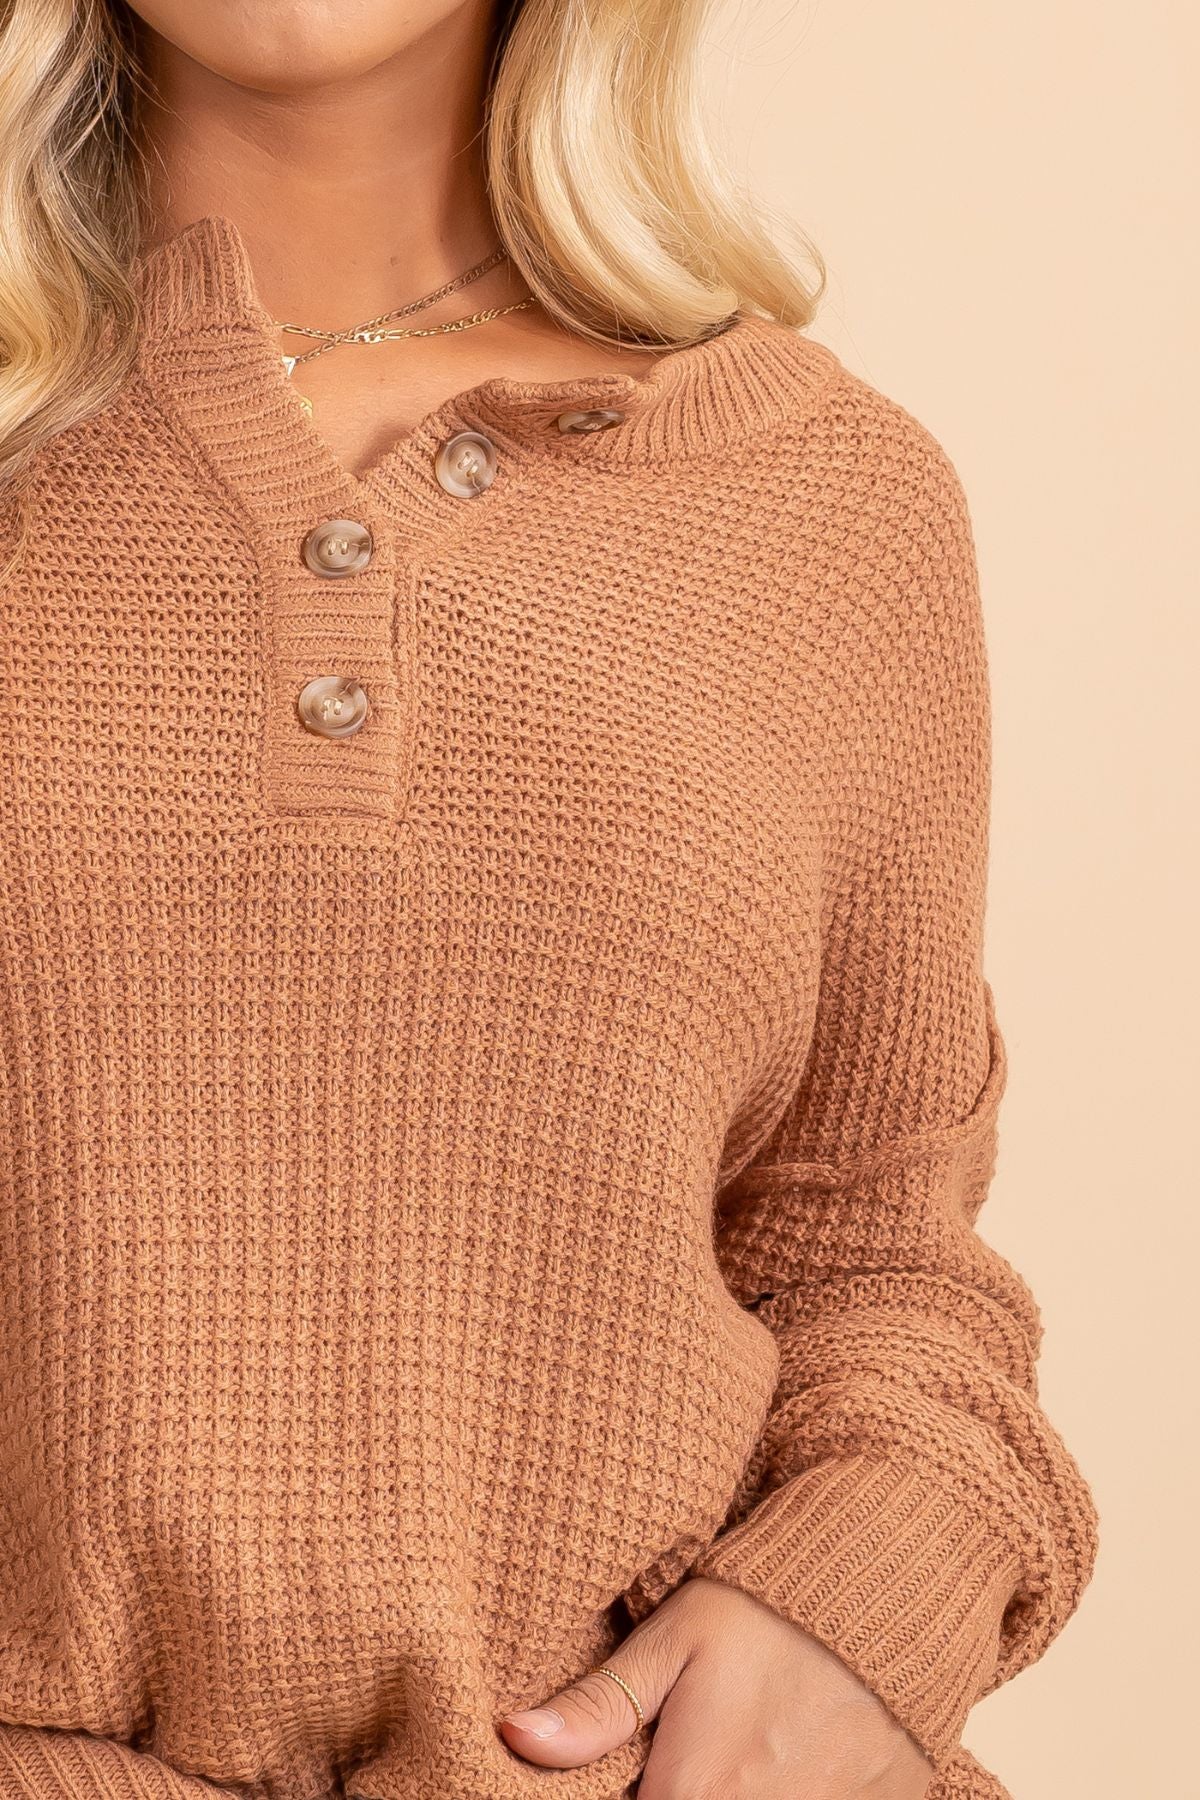 Hazelnut sweater